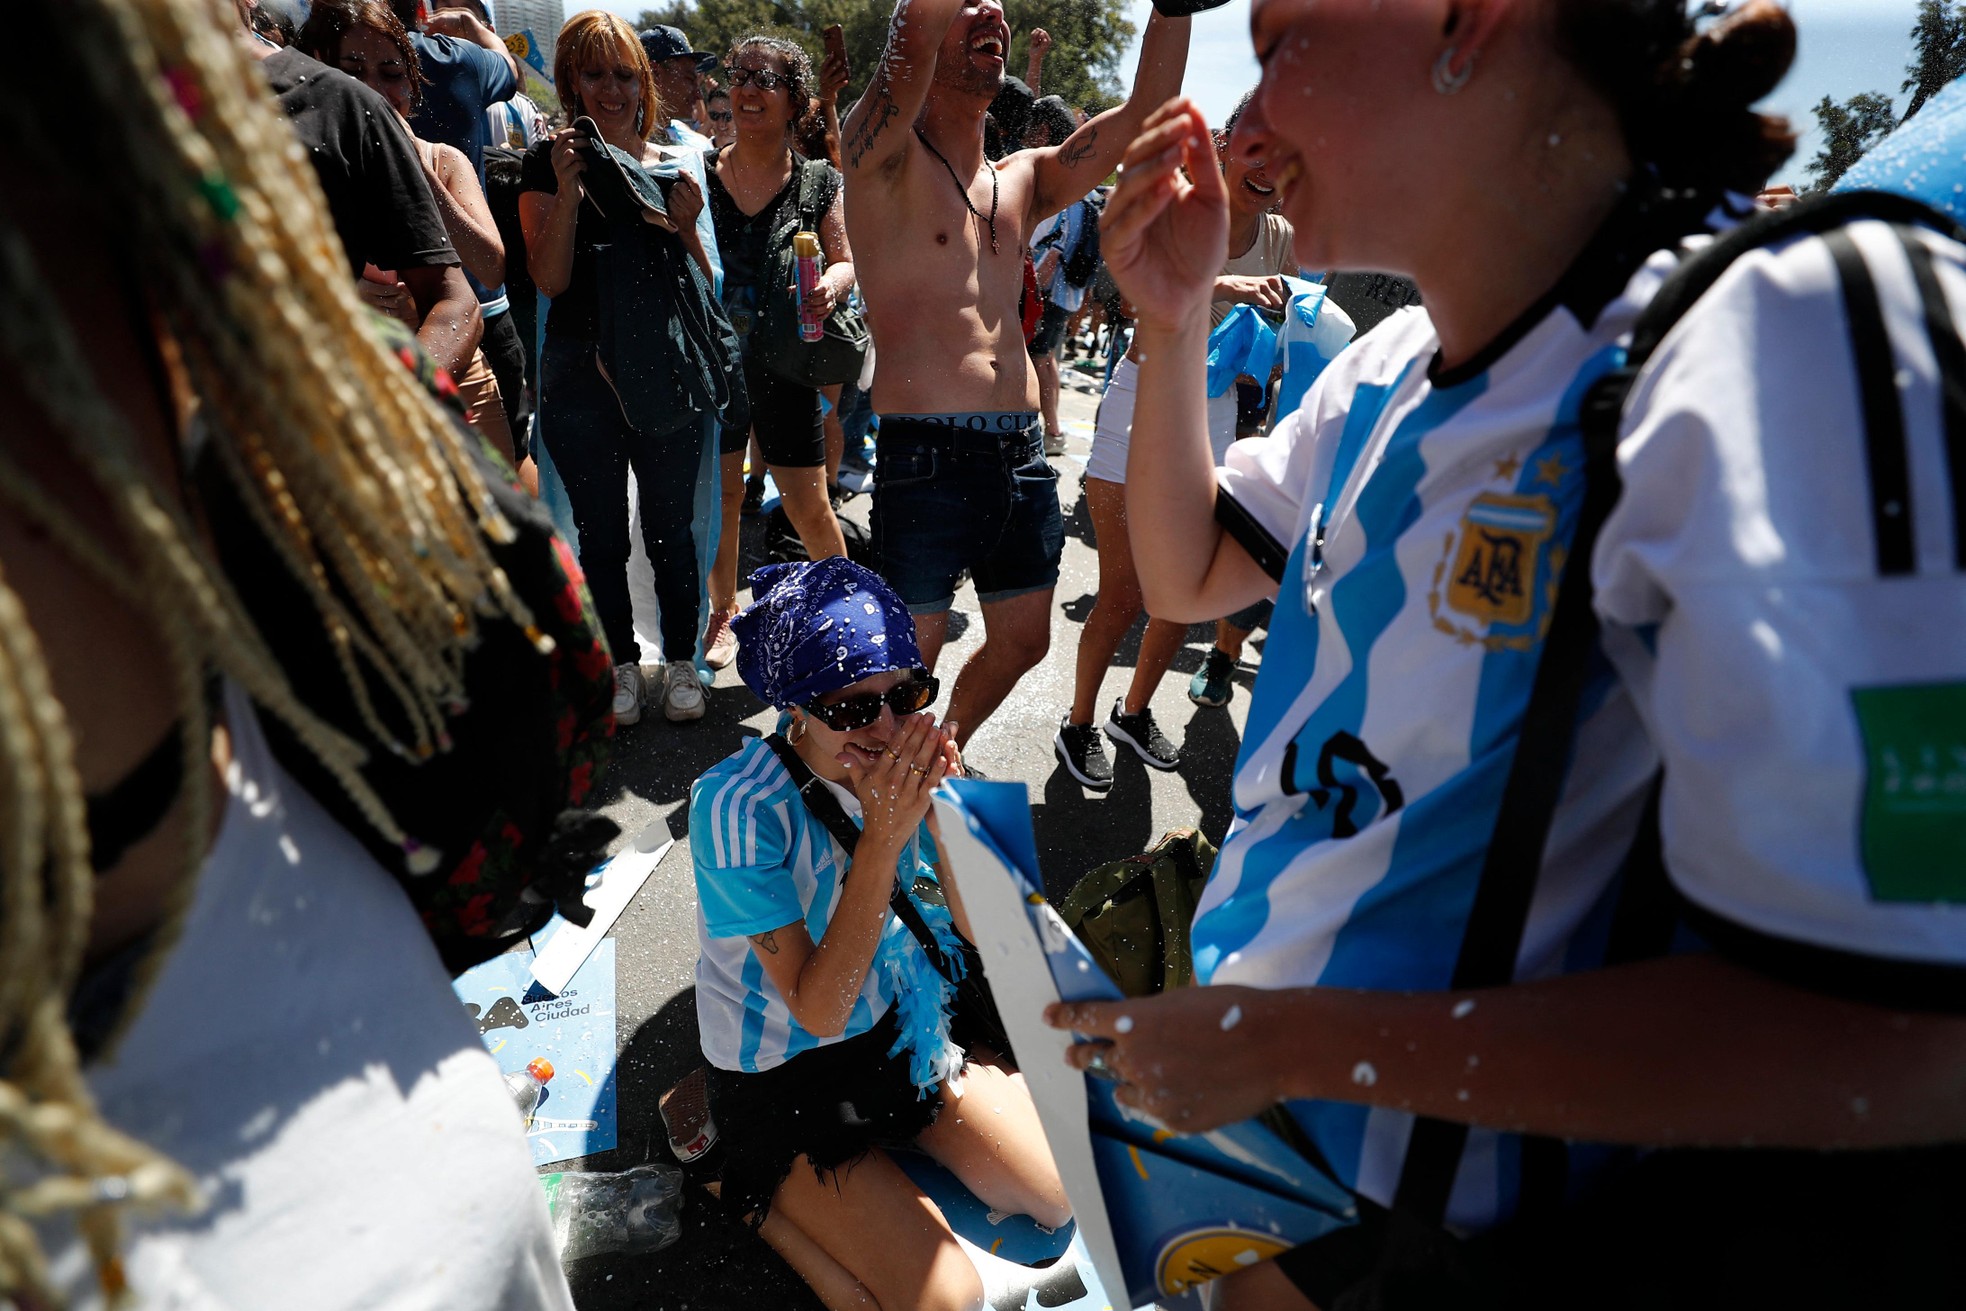 Thủ đô Argentina chìm trong mưa nước mắt vì hạnh phúc - Ảnh 4.